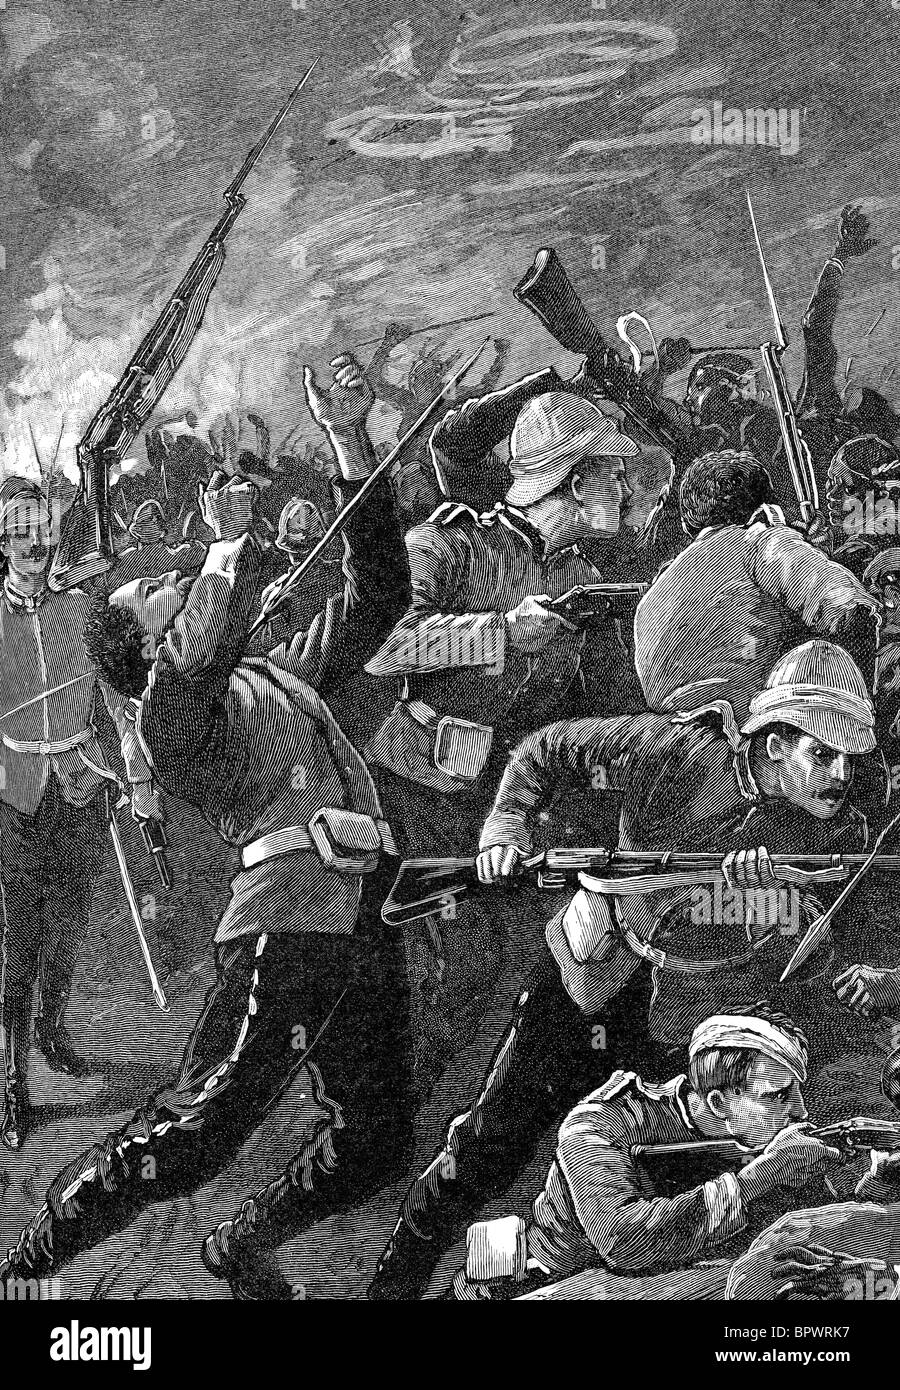 La bataille de Rorke's Drift soldats britanniques ont défendu avec succès leur garnison contre une agression intense par les guerriers zoulous. Banque D'Images